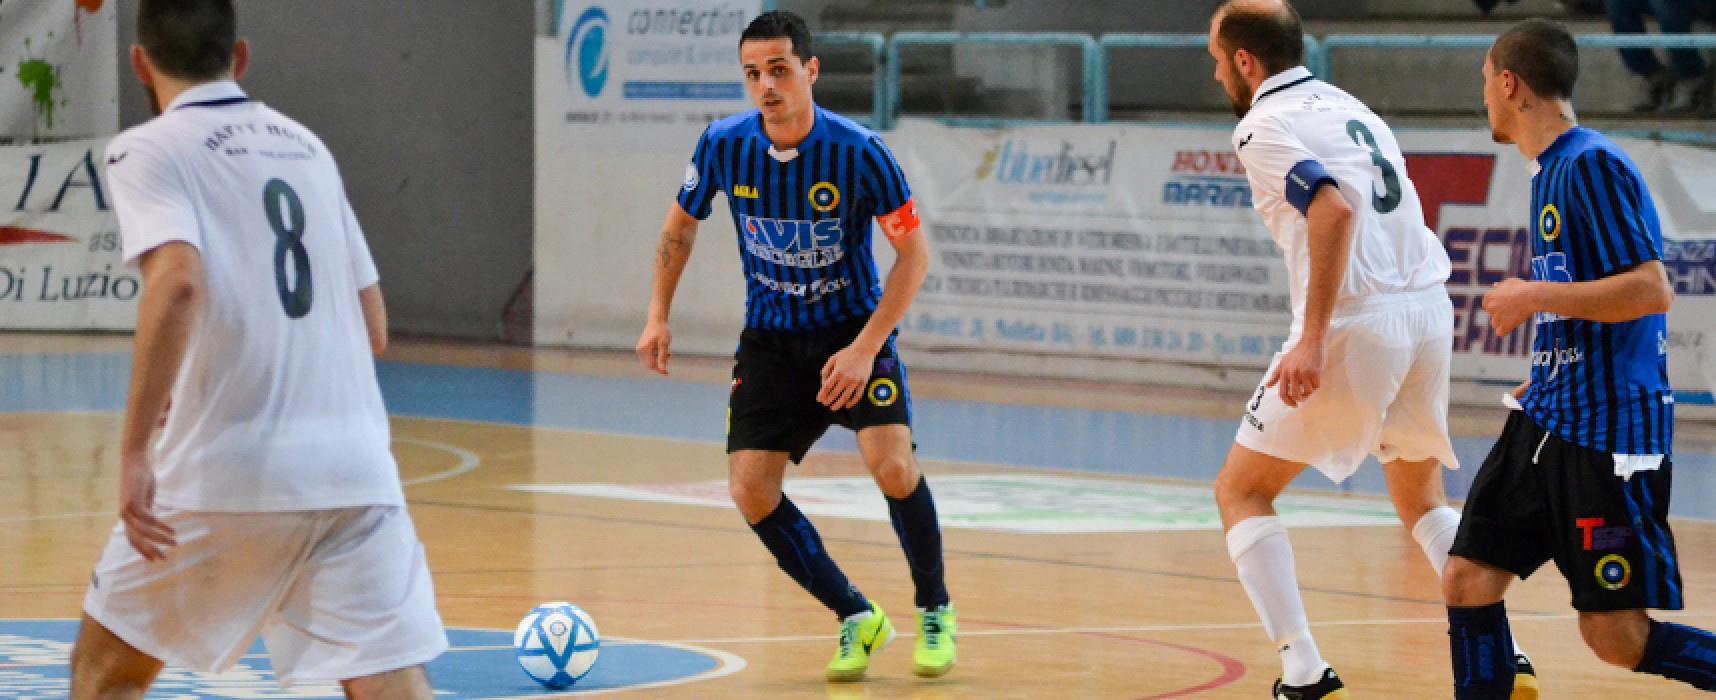 Capitan Caggianelli terza conferma in casa Futsal Bisceglie